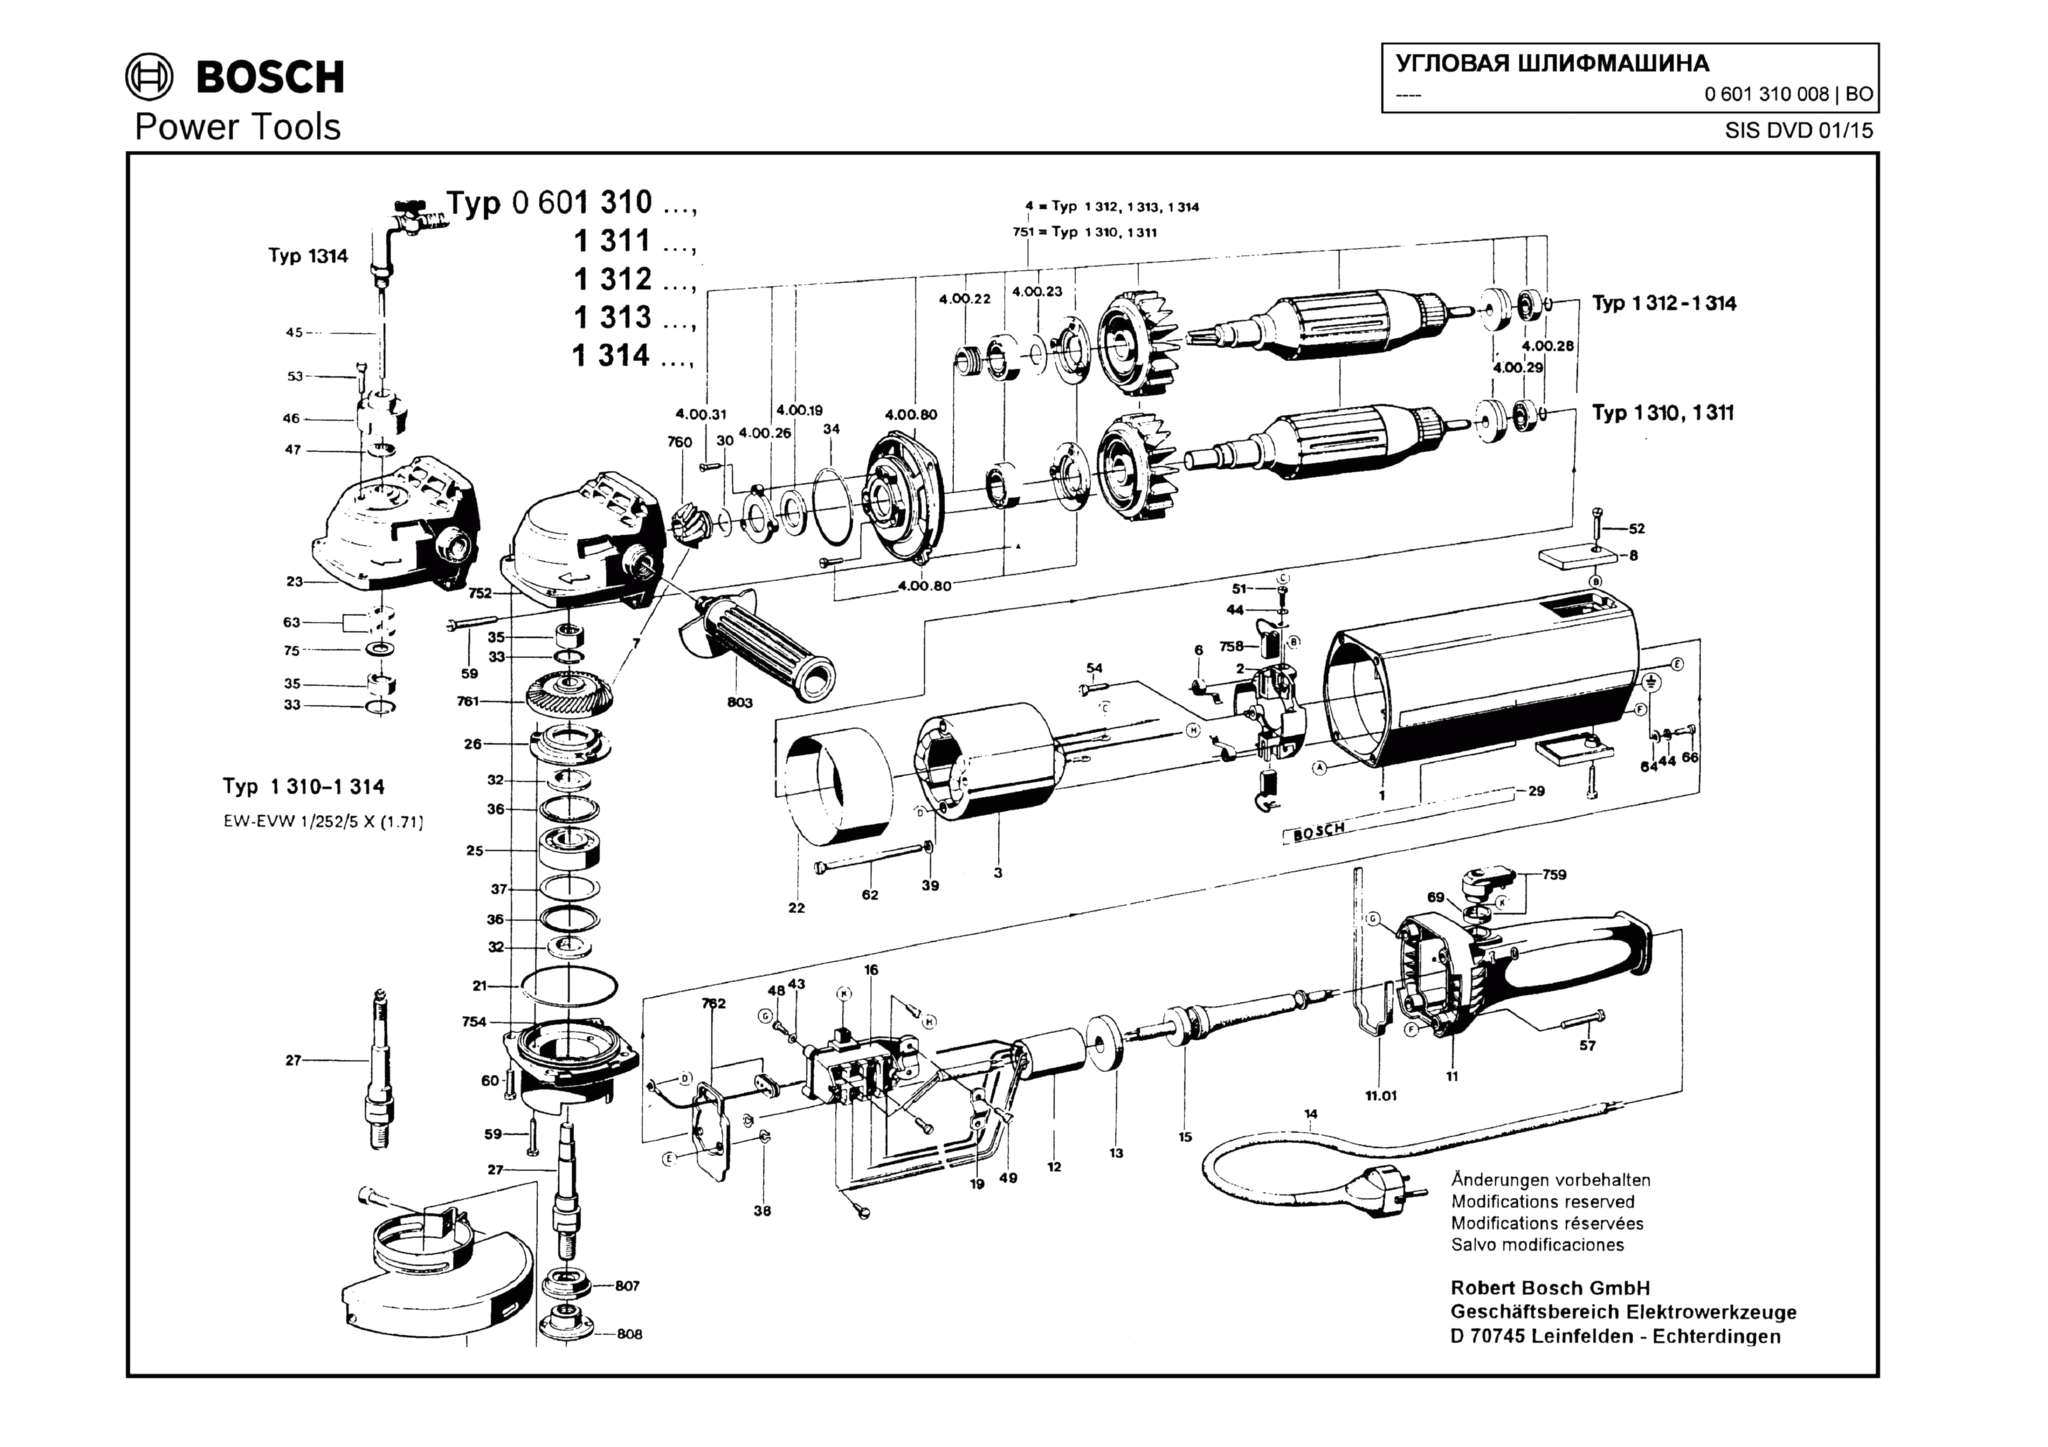 Запчасти, схема и деталировка Bosch (ТИП 0601310008)